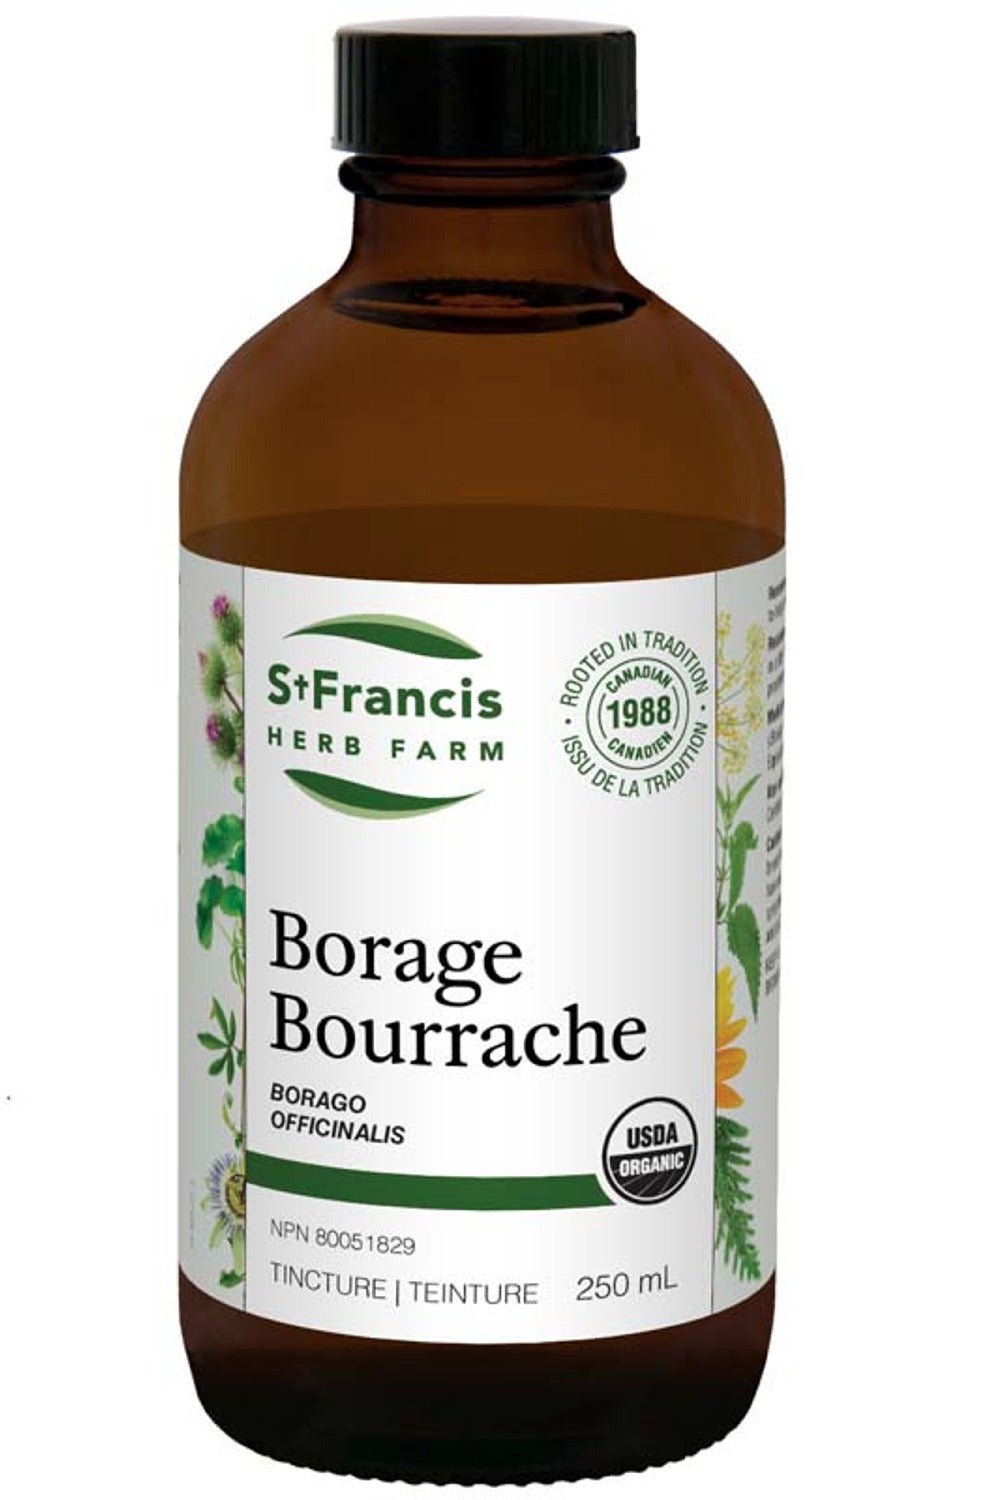 ST FRANCIS HERB FARM Borage (250 ml)